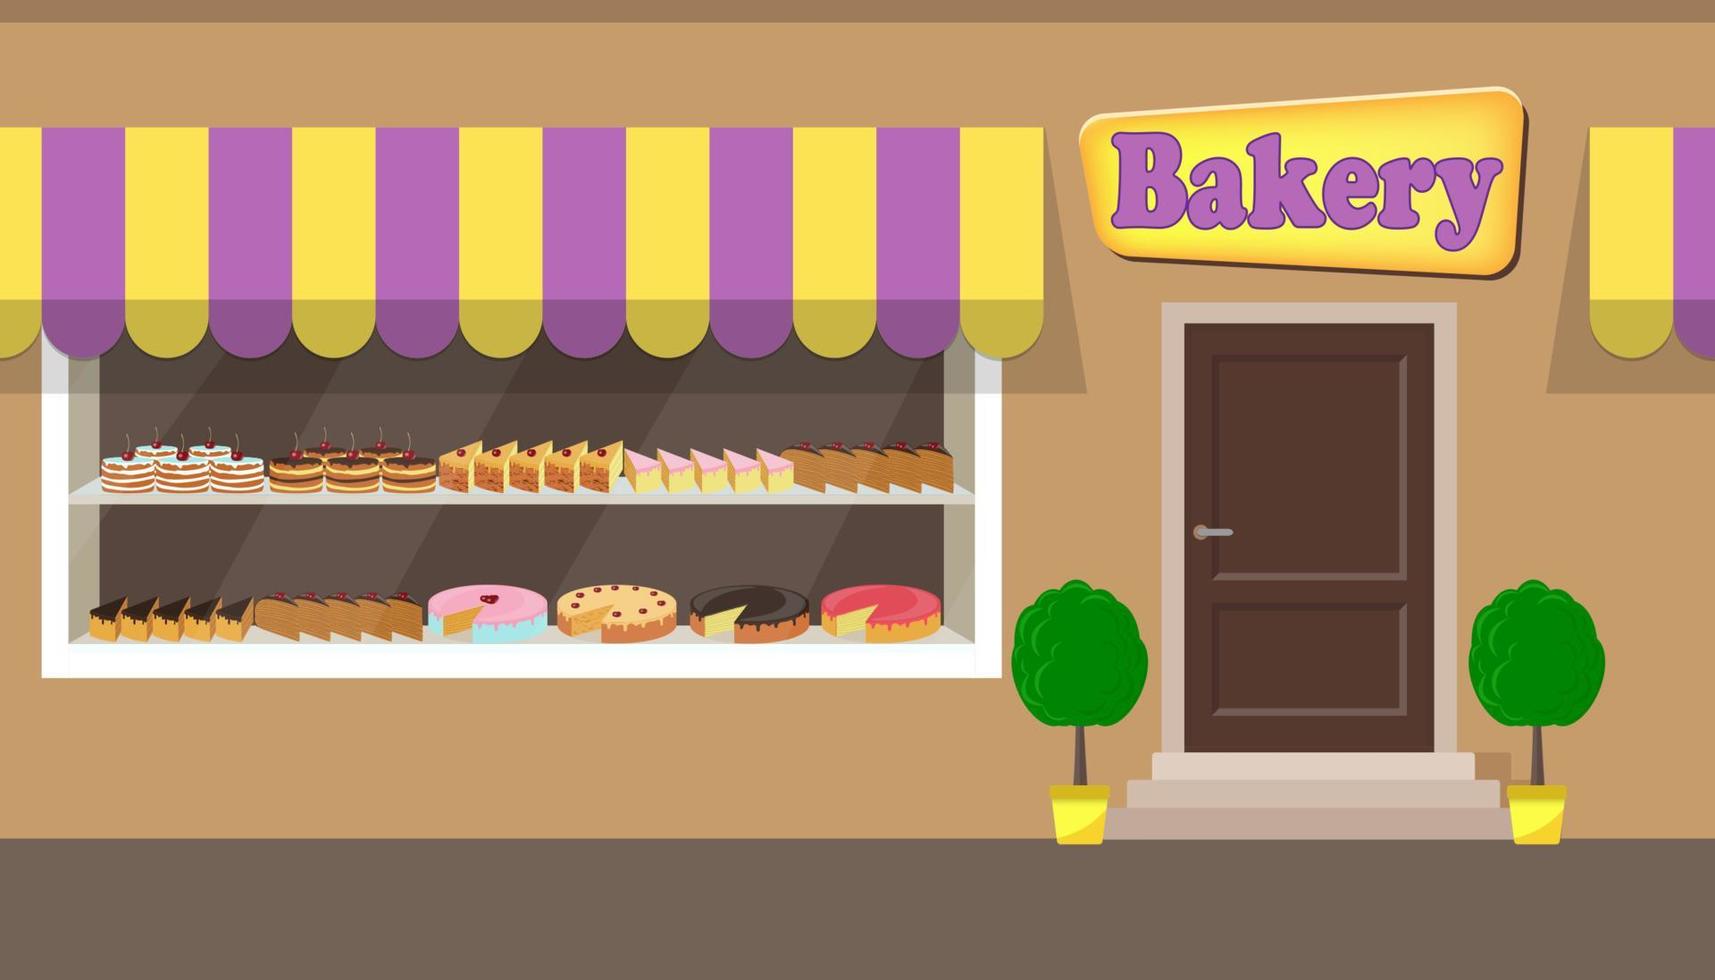 fachada de edificio de panadería con letrero. diferentes pasteles y tartas en los estantes detrás del cristal de la ventana. Ilustración de vector de fachada de panadería en estilo plano.